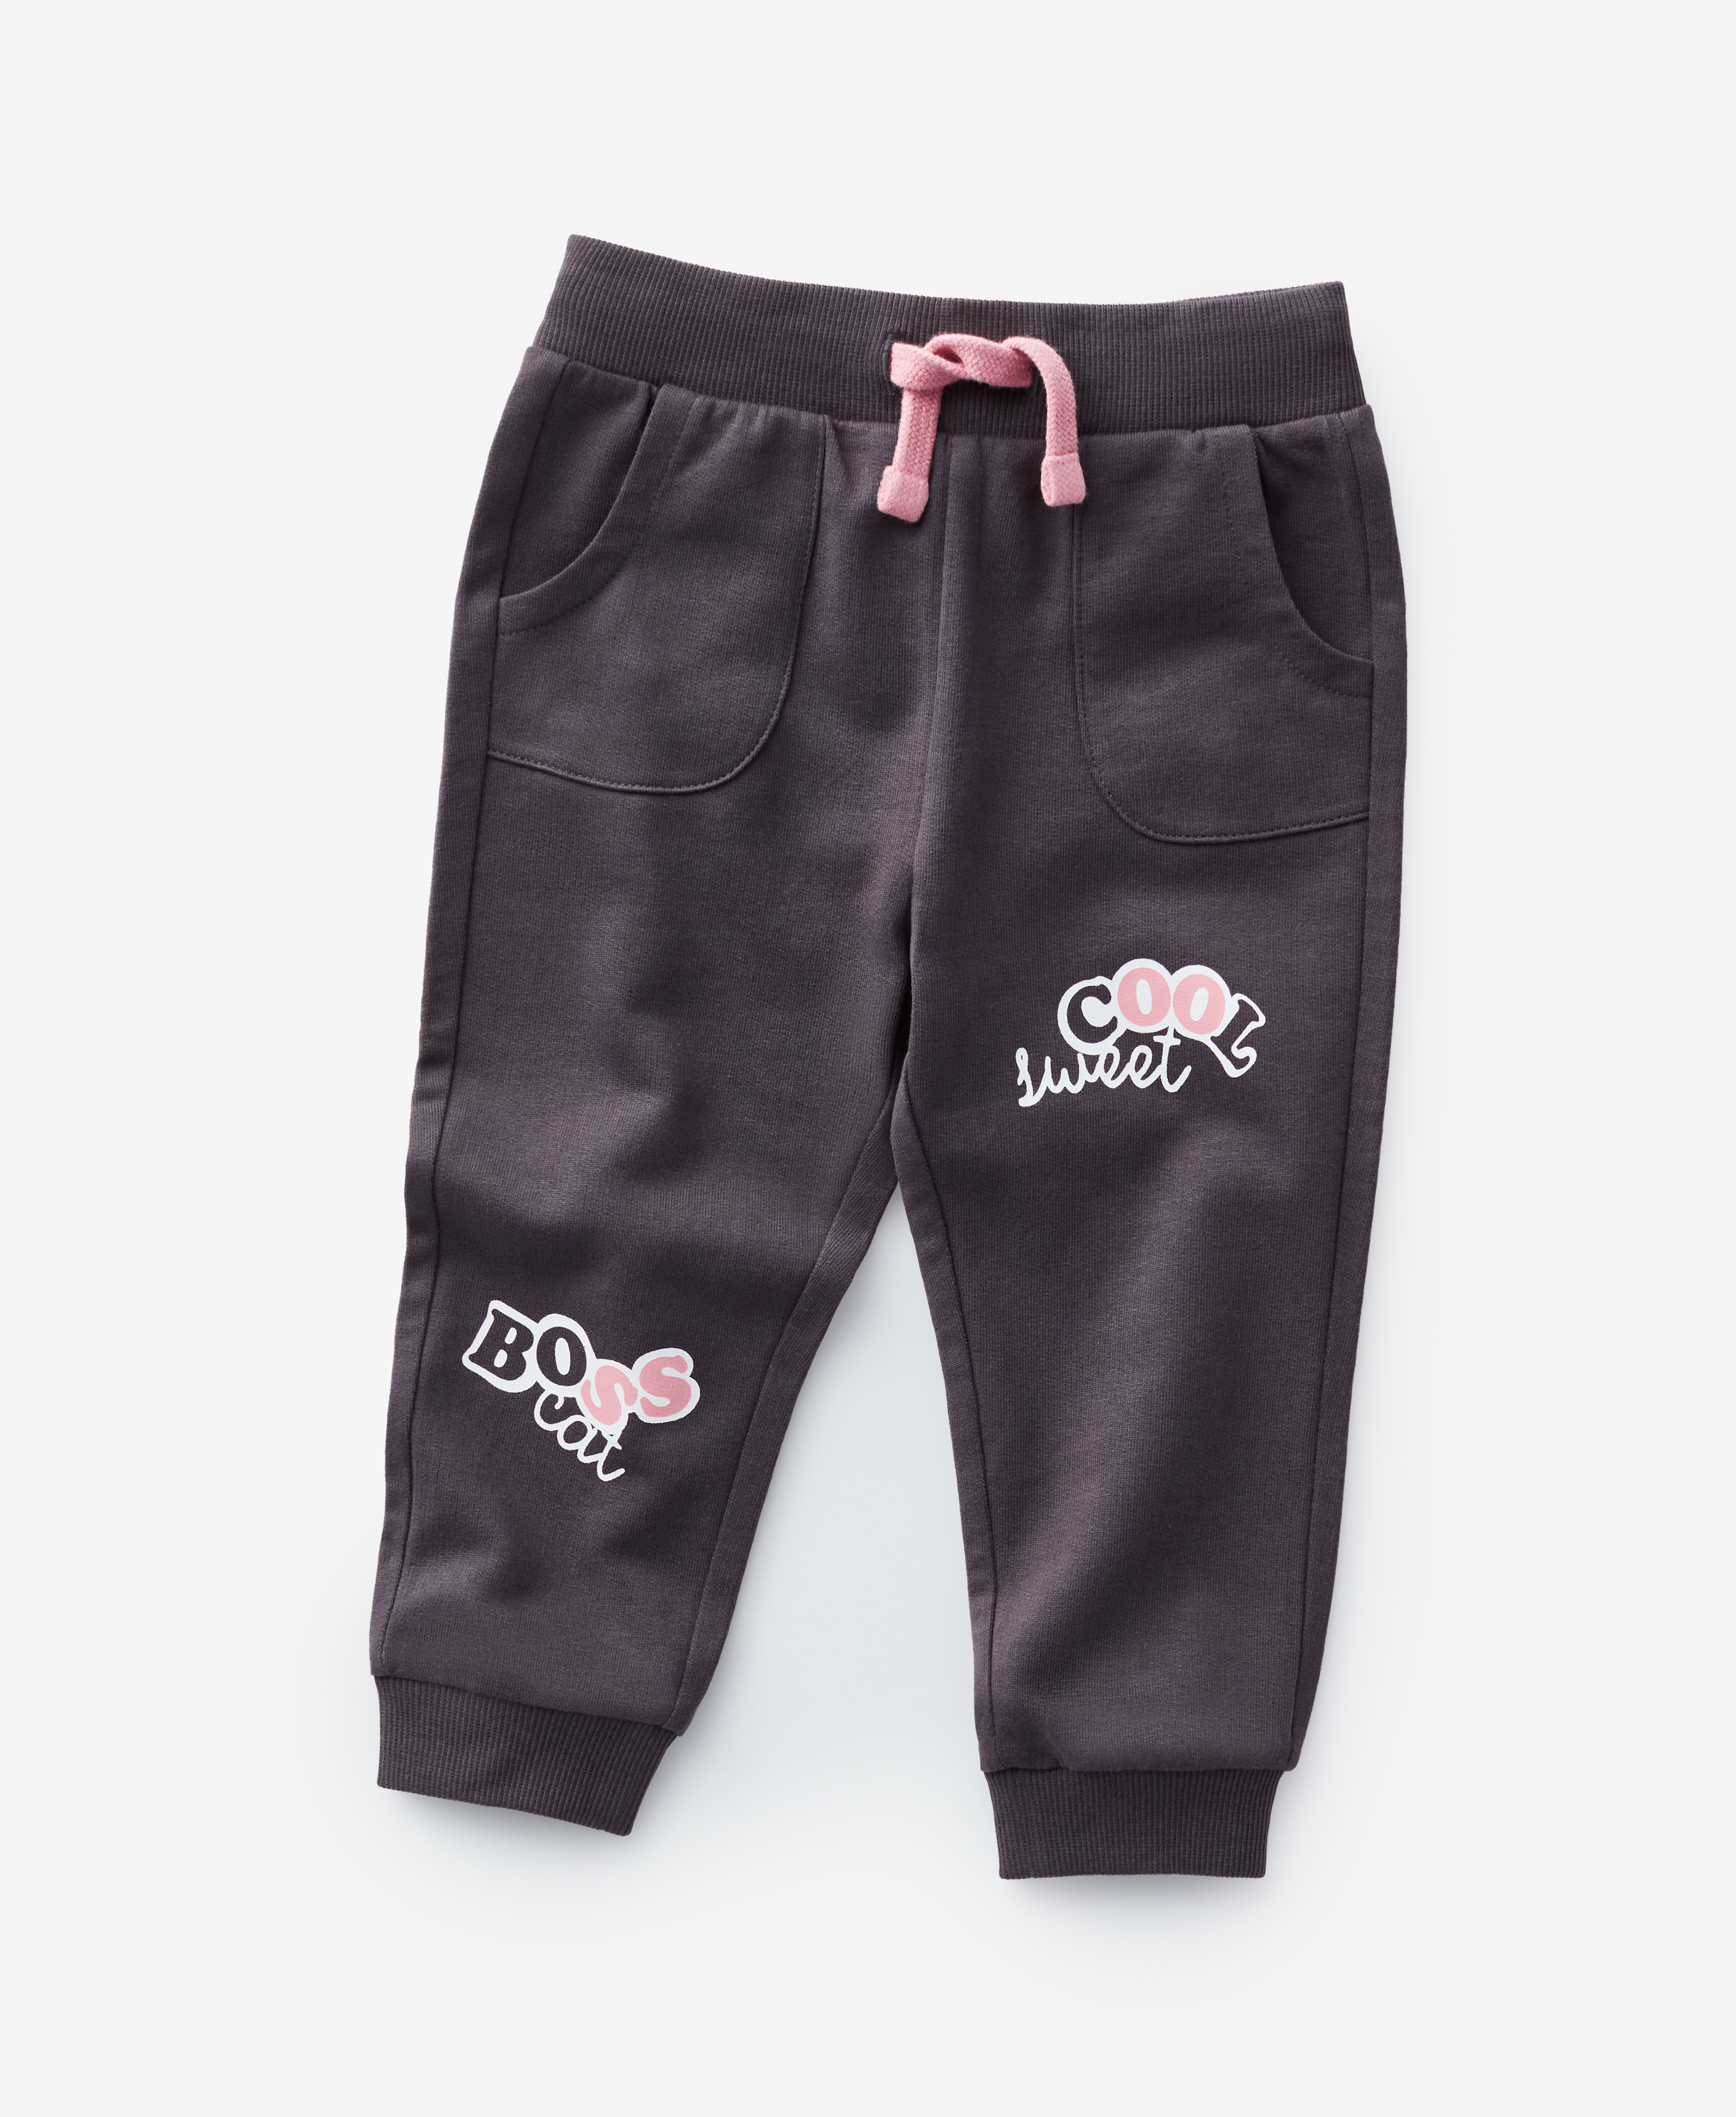 Pantalones de chándal para niños - Pepco España